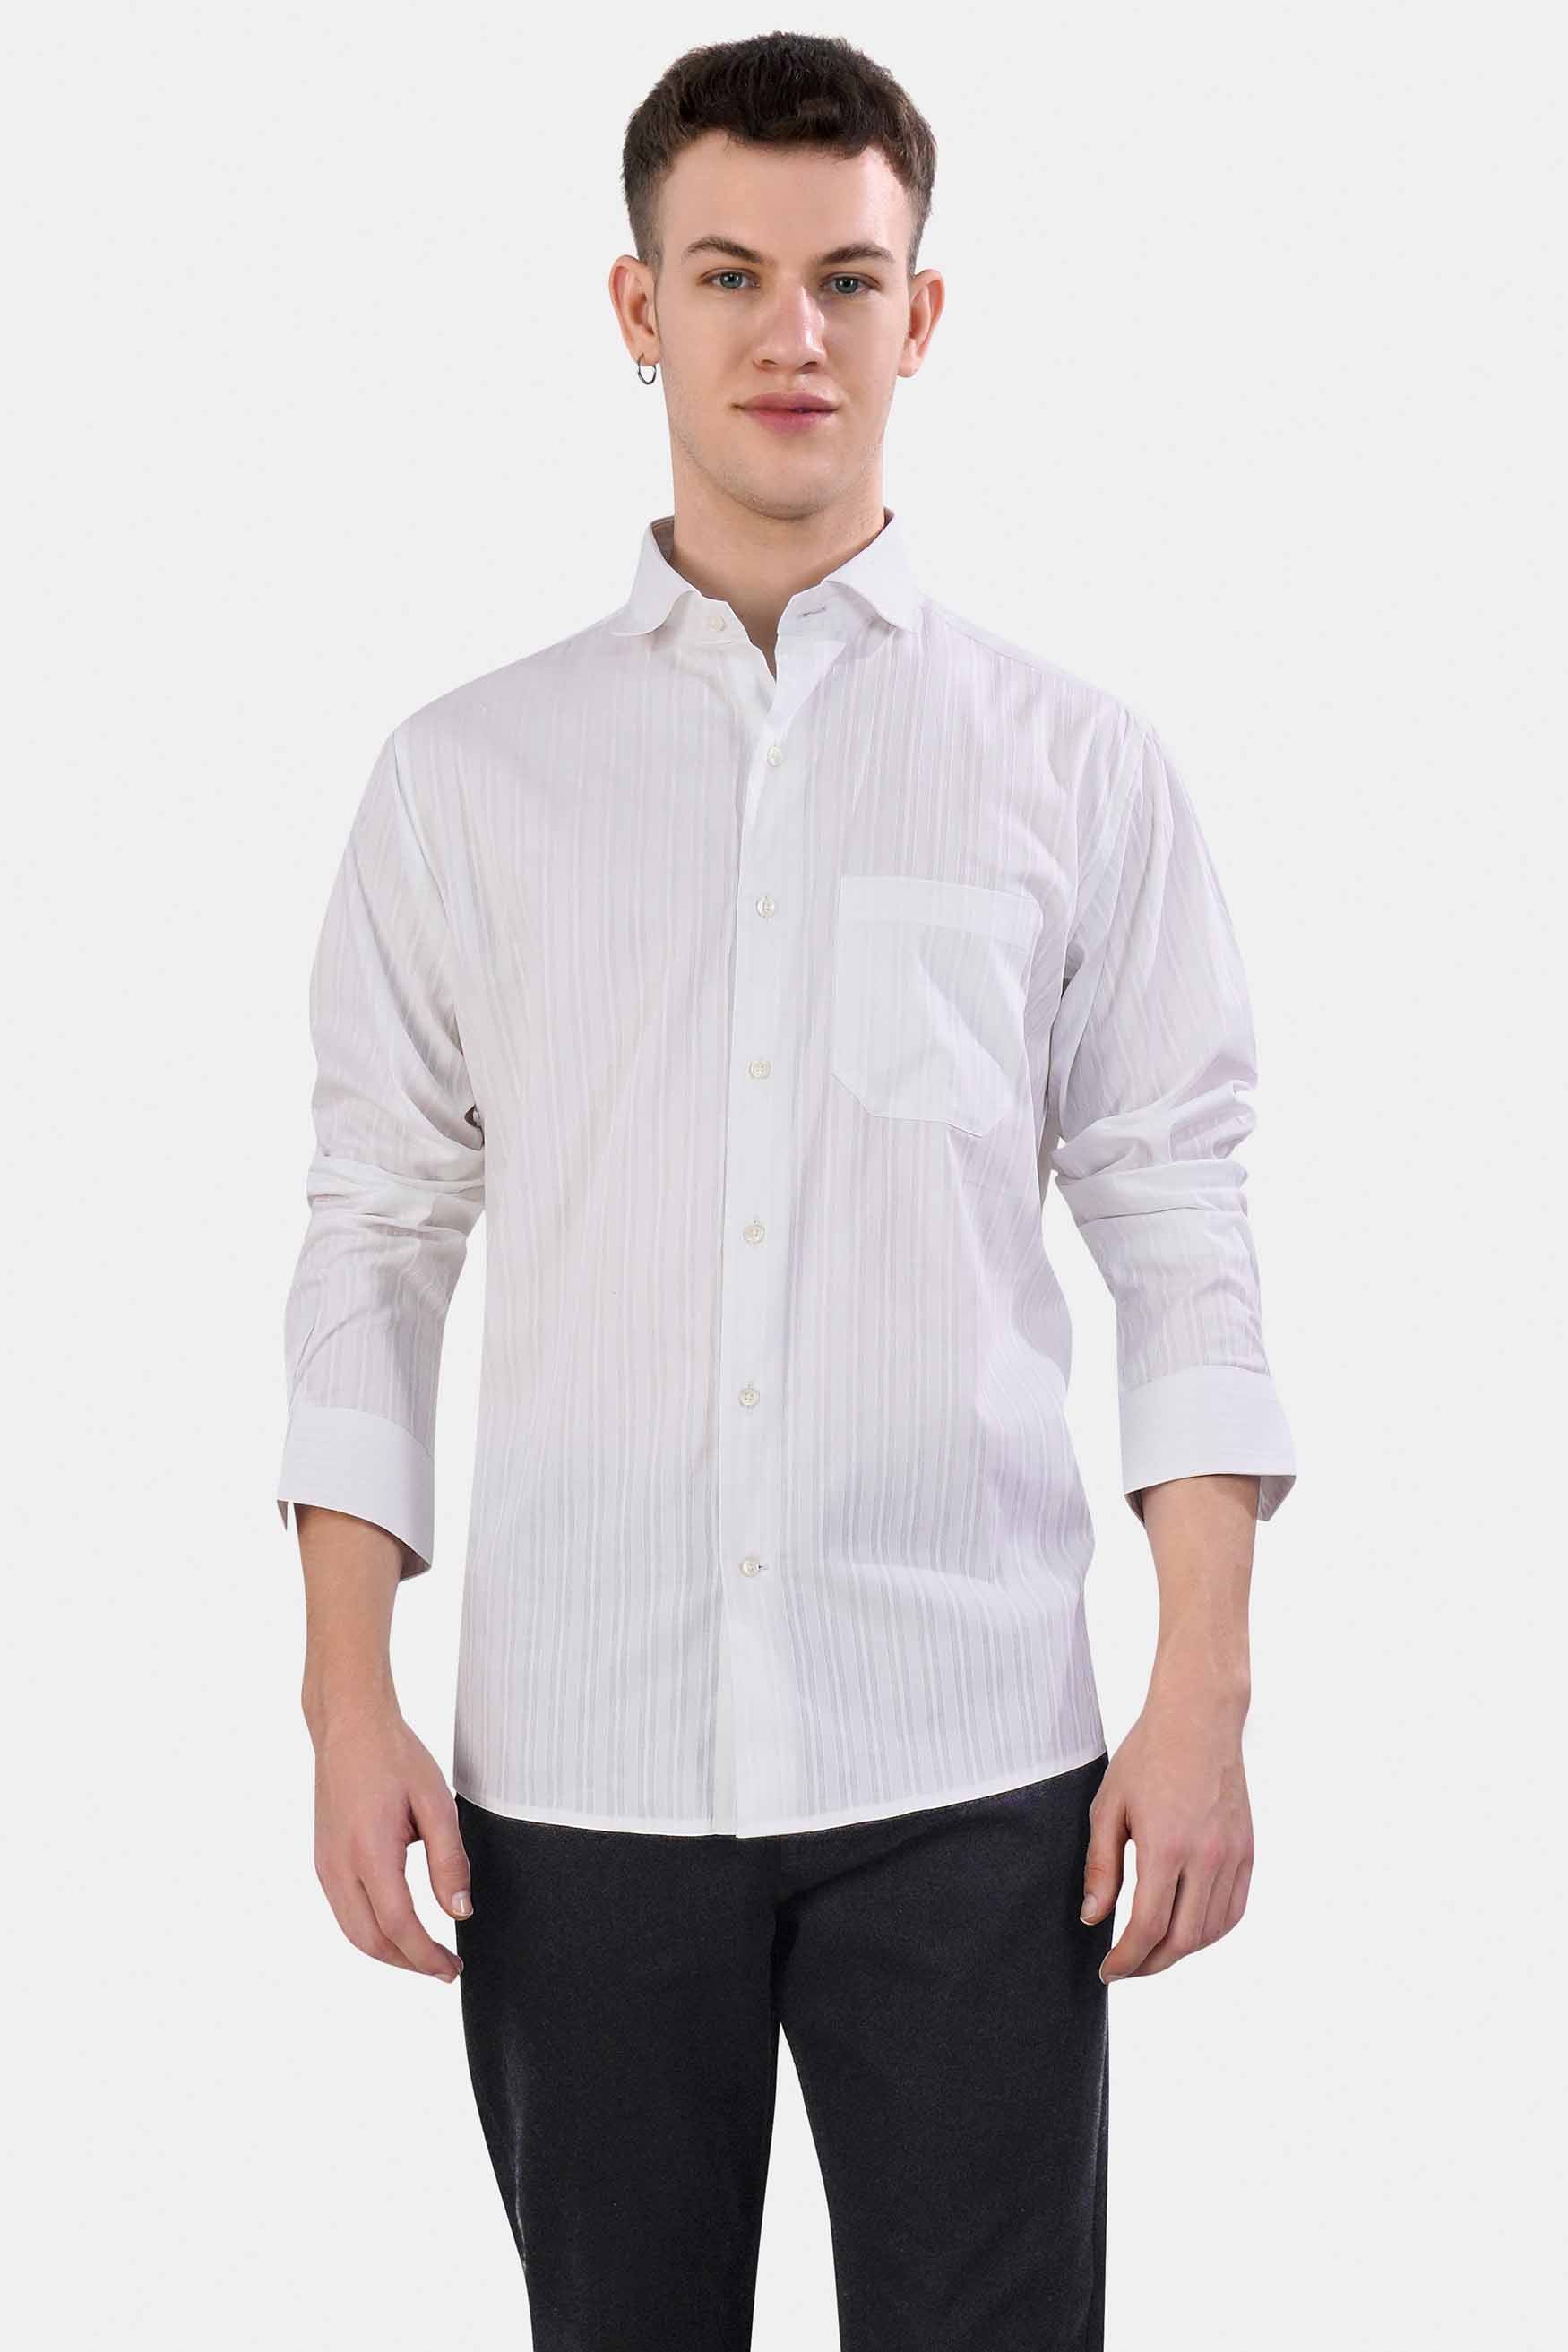 Bright White Striped Dobby Textured Premium Giza Cotton Shirt